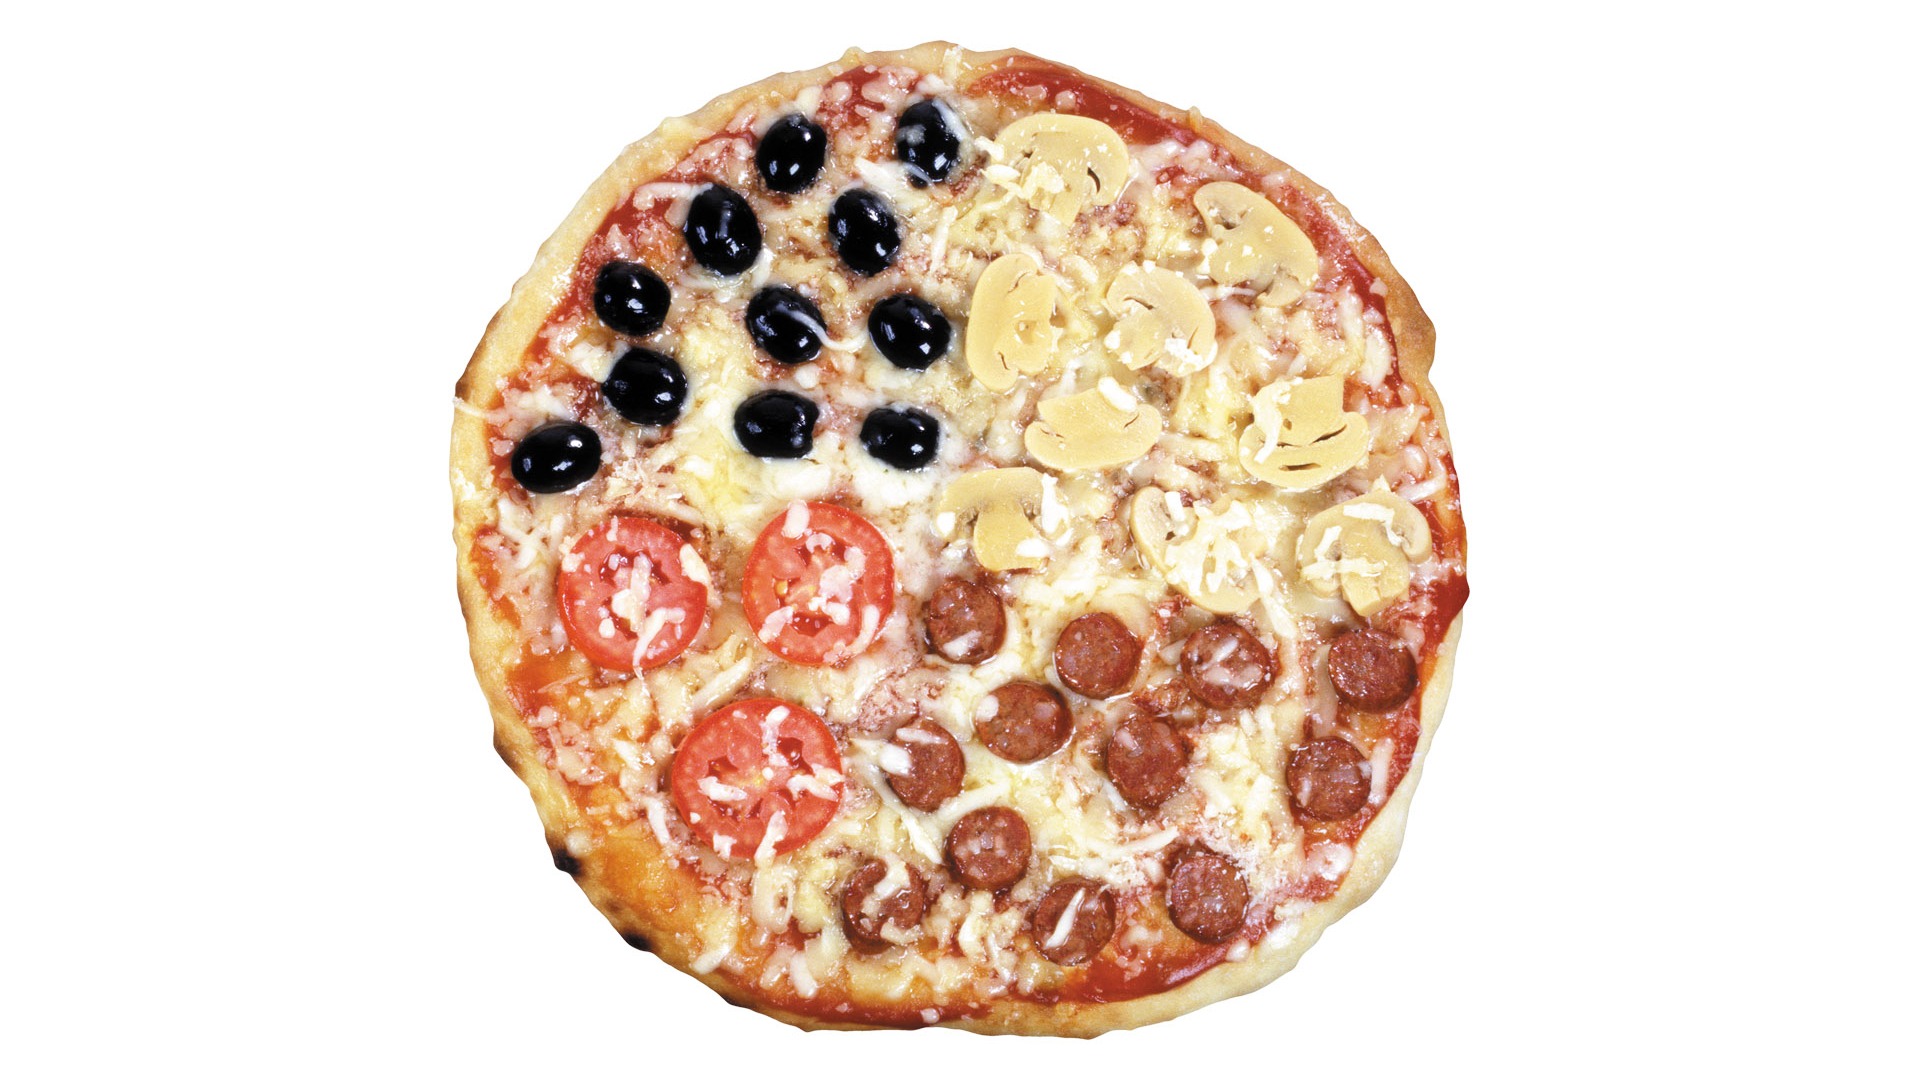 Fondos de pizzerías de Alimentos (3) #6 - 1920x1080